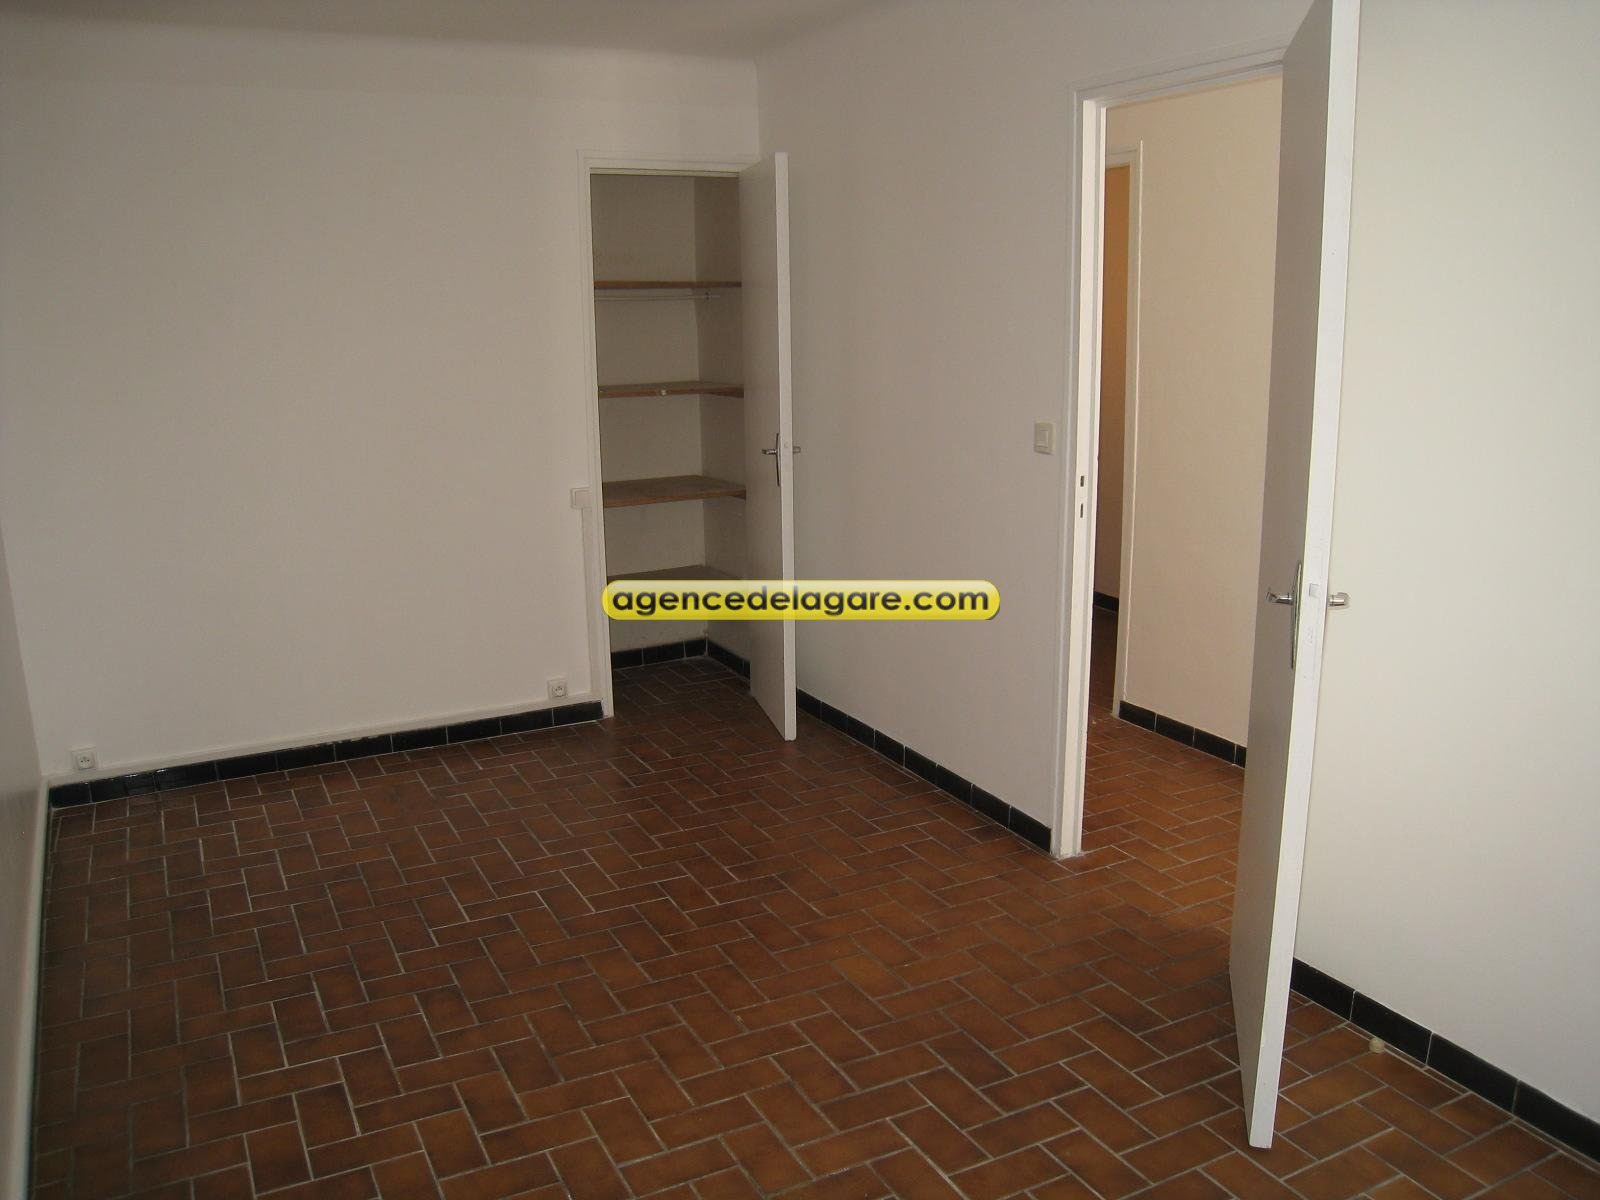 Location appartement 2 pièces 47,74 m2